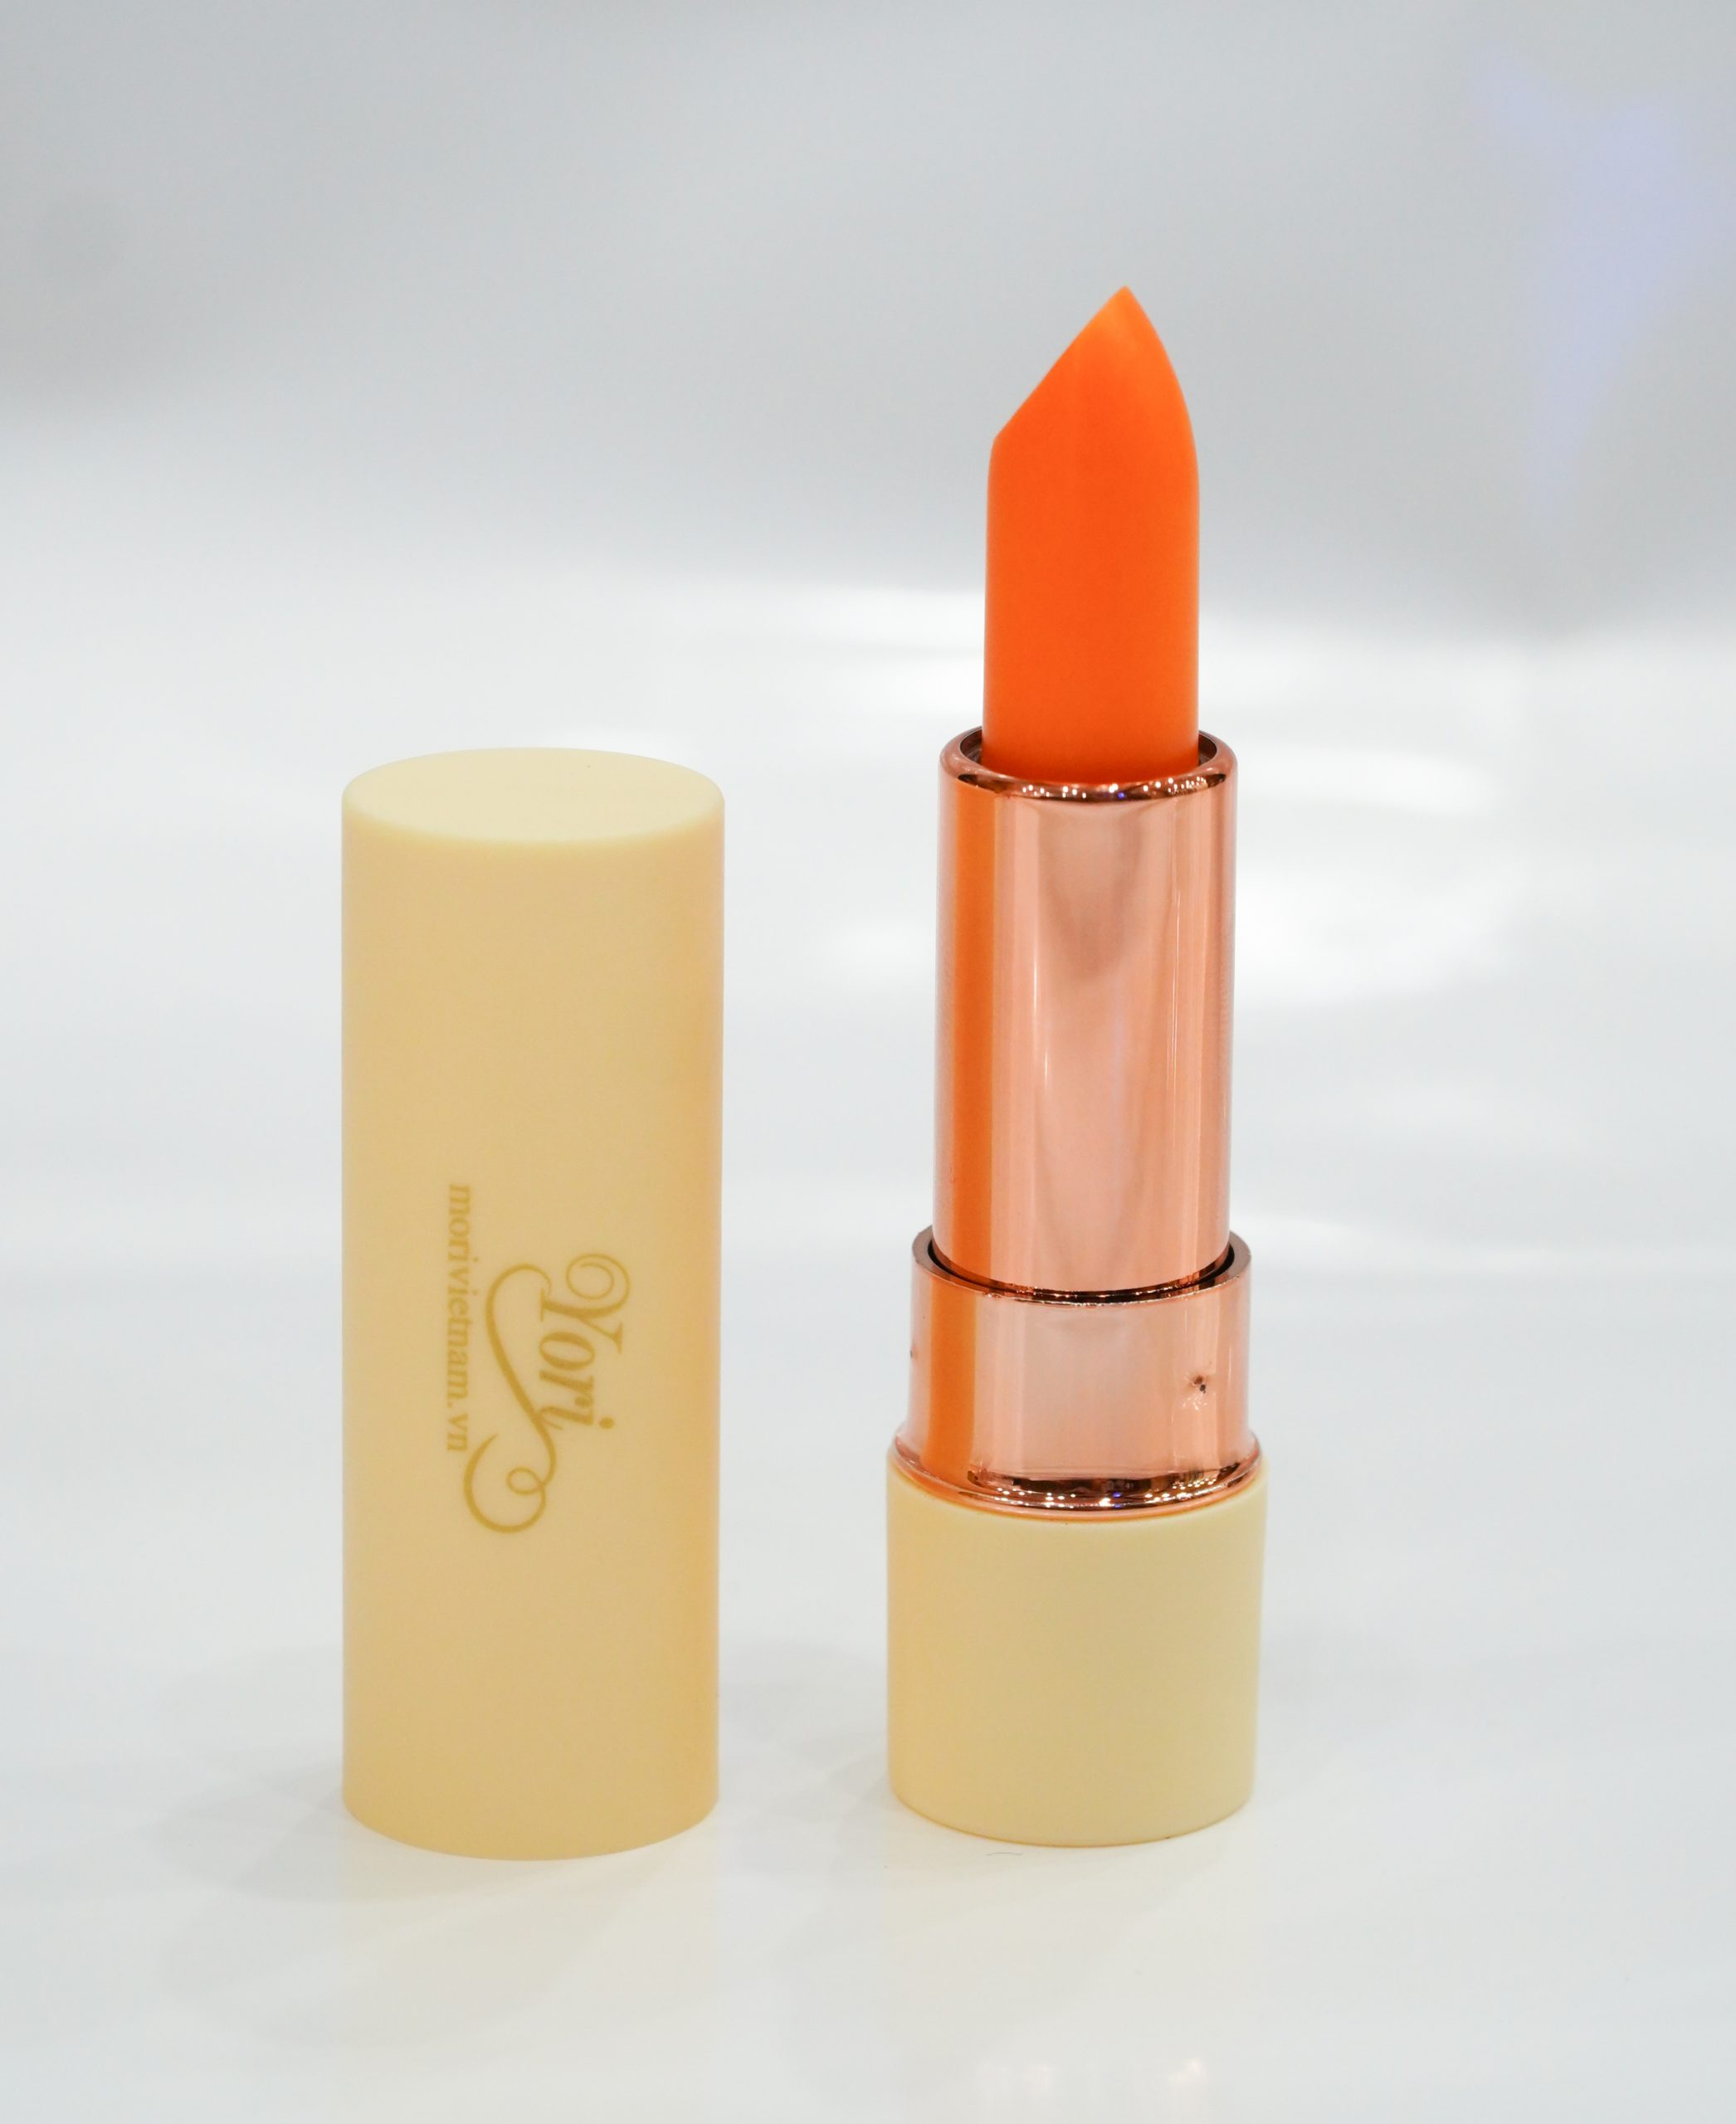 YORI lip balm – peach orange color